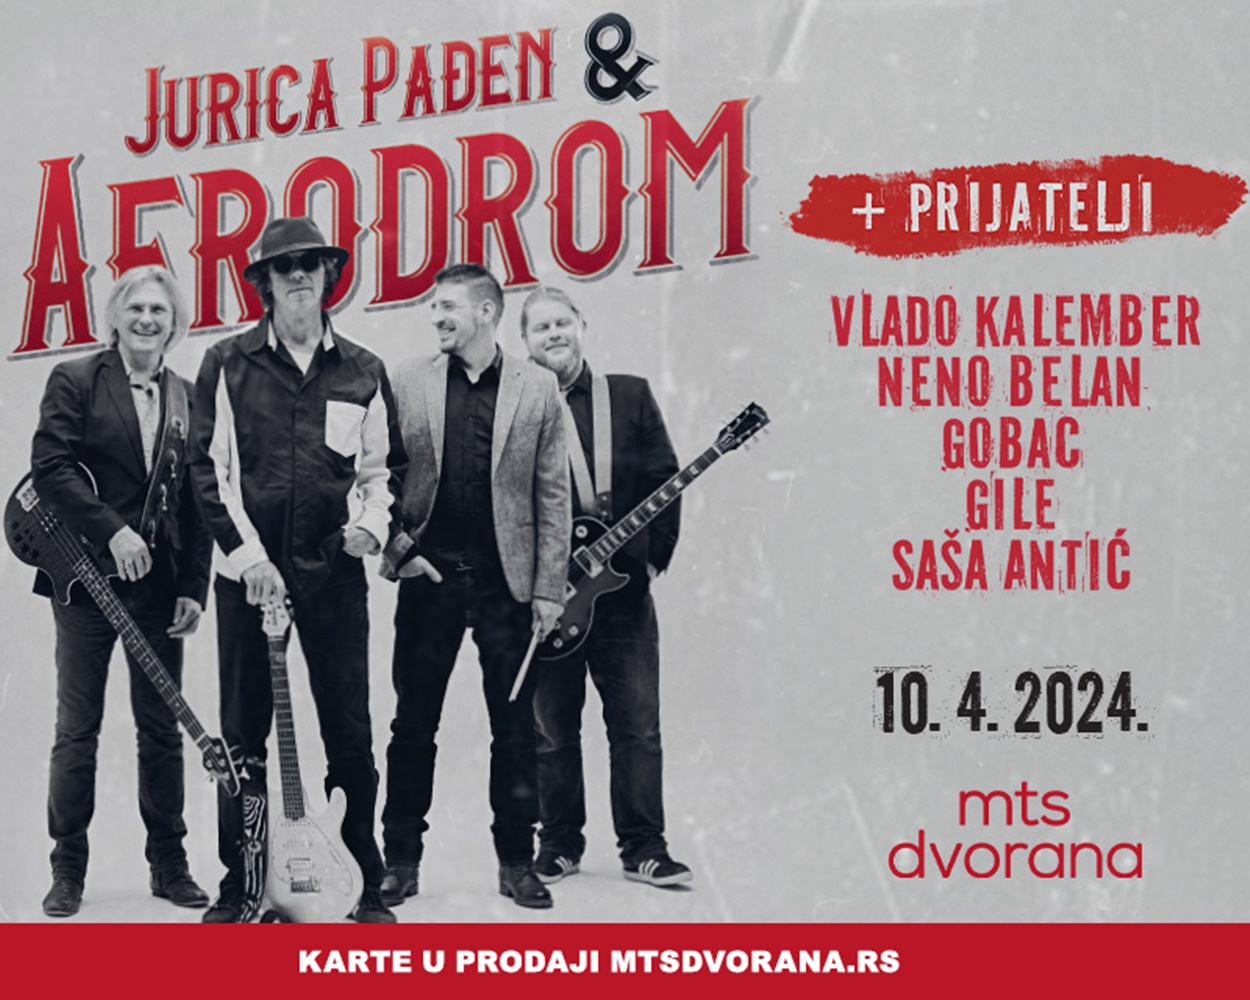 Jurica Pađen i grupa Aerodrom sa prijateljima održaće koncert u Beogradu!